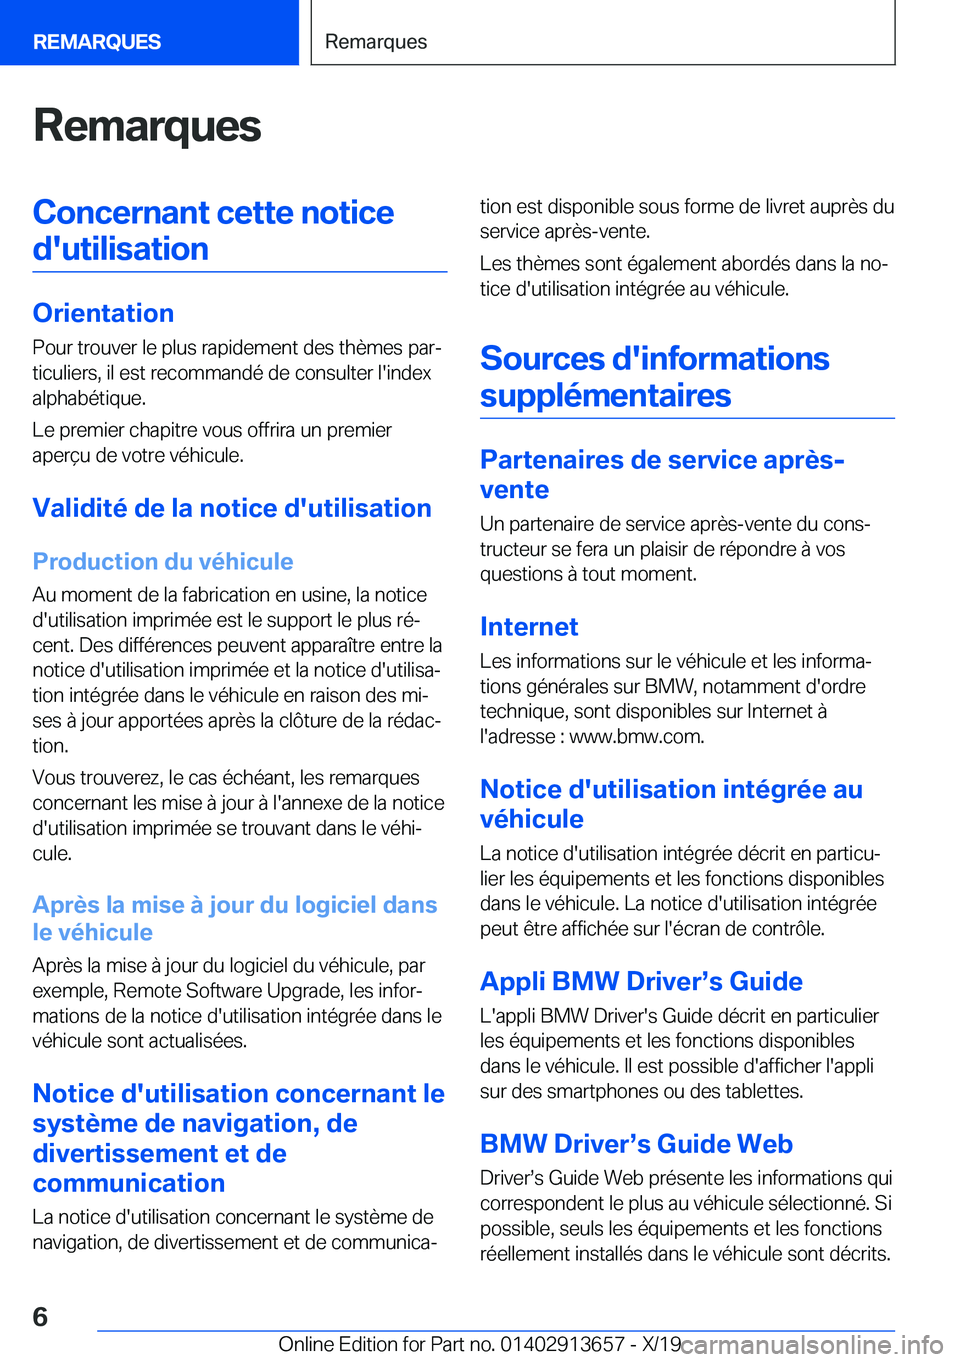 BMW X5 2020  Notices Demploi (in French) �R�e�m�a�r�q�u�e�s�C�o�n�c�e�r�n�a�n�t��c�e�t�t�e��n�o�t�i�c�e�d�'�u�t�i�l�i�s�a�t�i�o�n
�O�r�i�e�n�t�a�t�i�o�n �P�o�u�r��t�r�o�u�v�e�r��l�e��p�l�u�s��r�a�p�i�d�e�m�e�n�t��d�e�s��t�h�è�m�